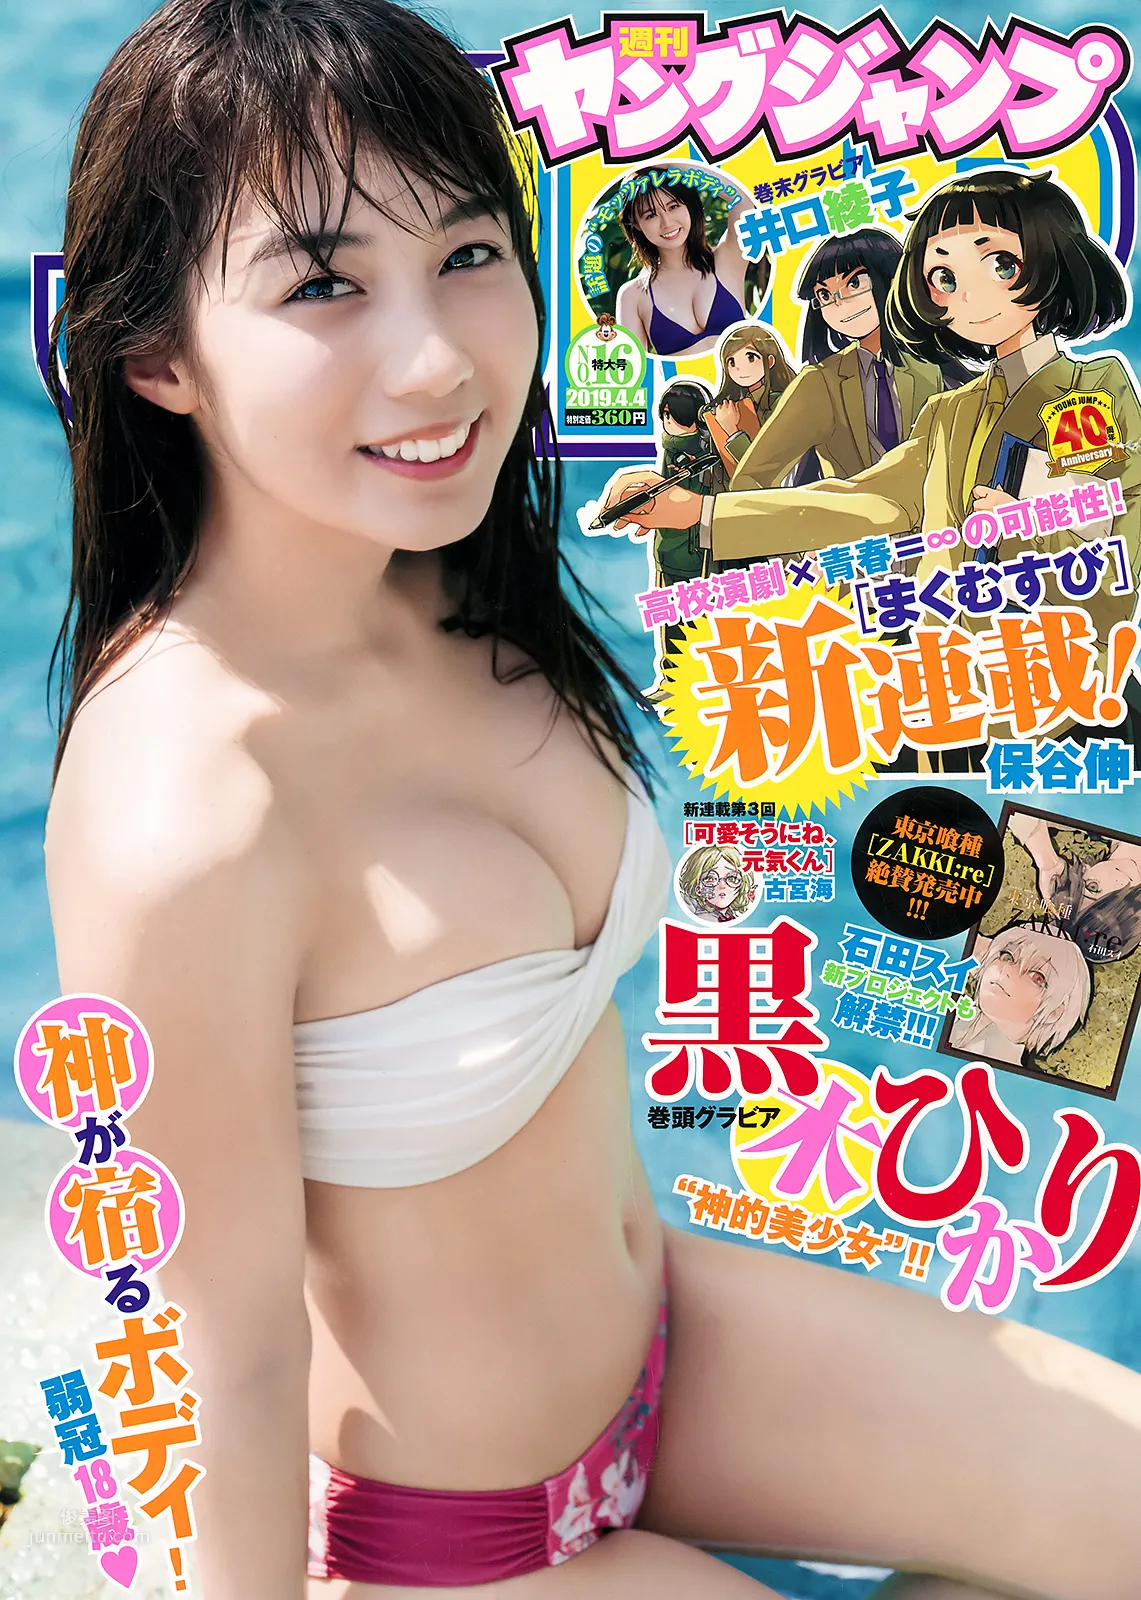 黒木ひかり,Hikari Kuroki - FLASH, Weekly SPA!, Weekly Playboy, Young Jump, 2019_0